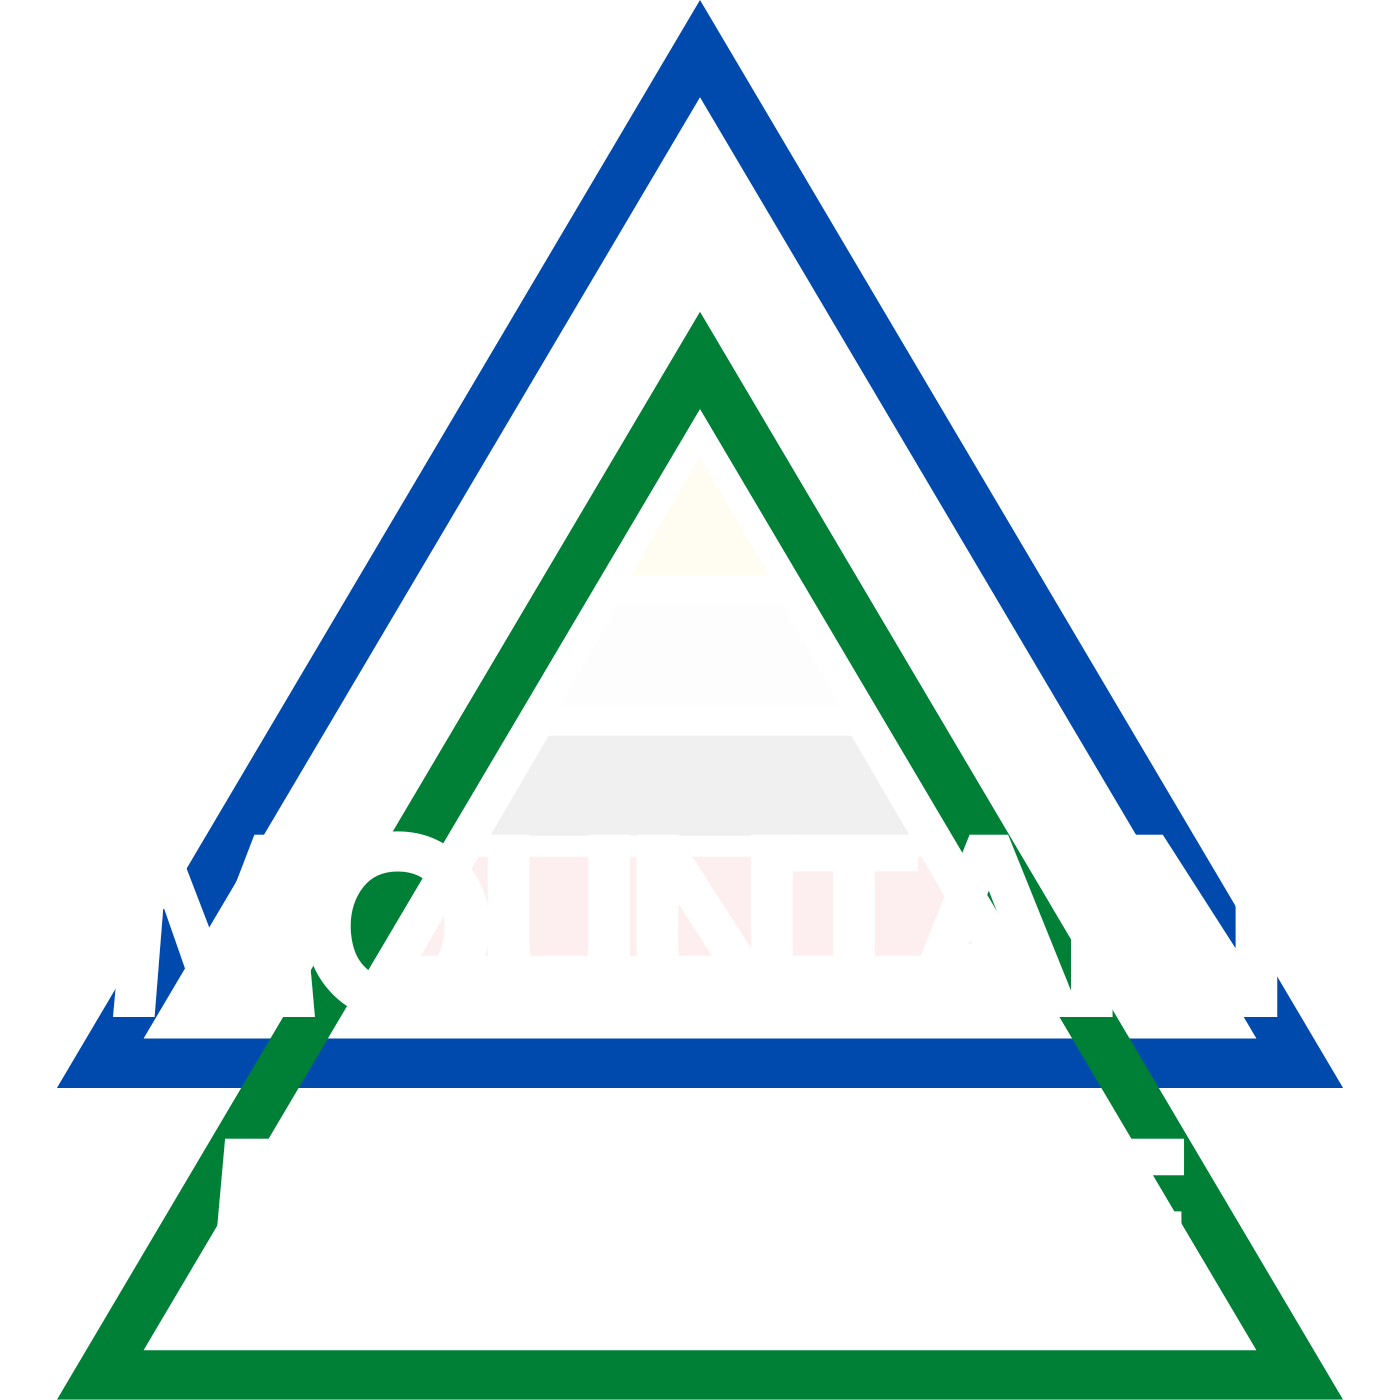 MOUNTAIN MEDICINE